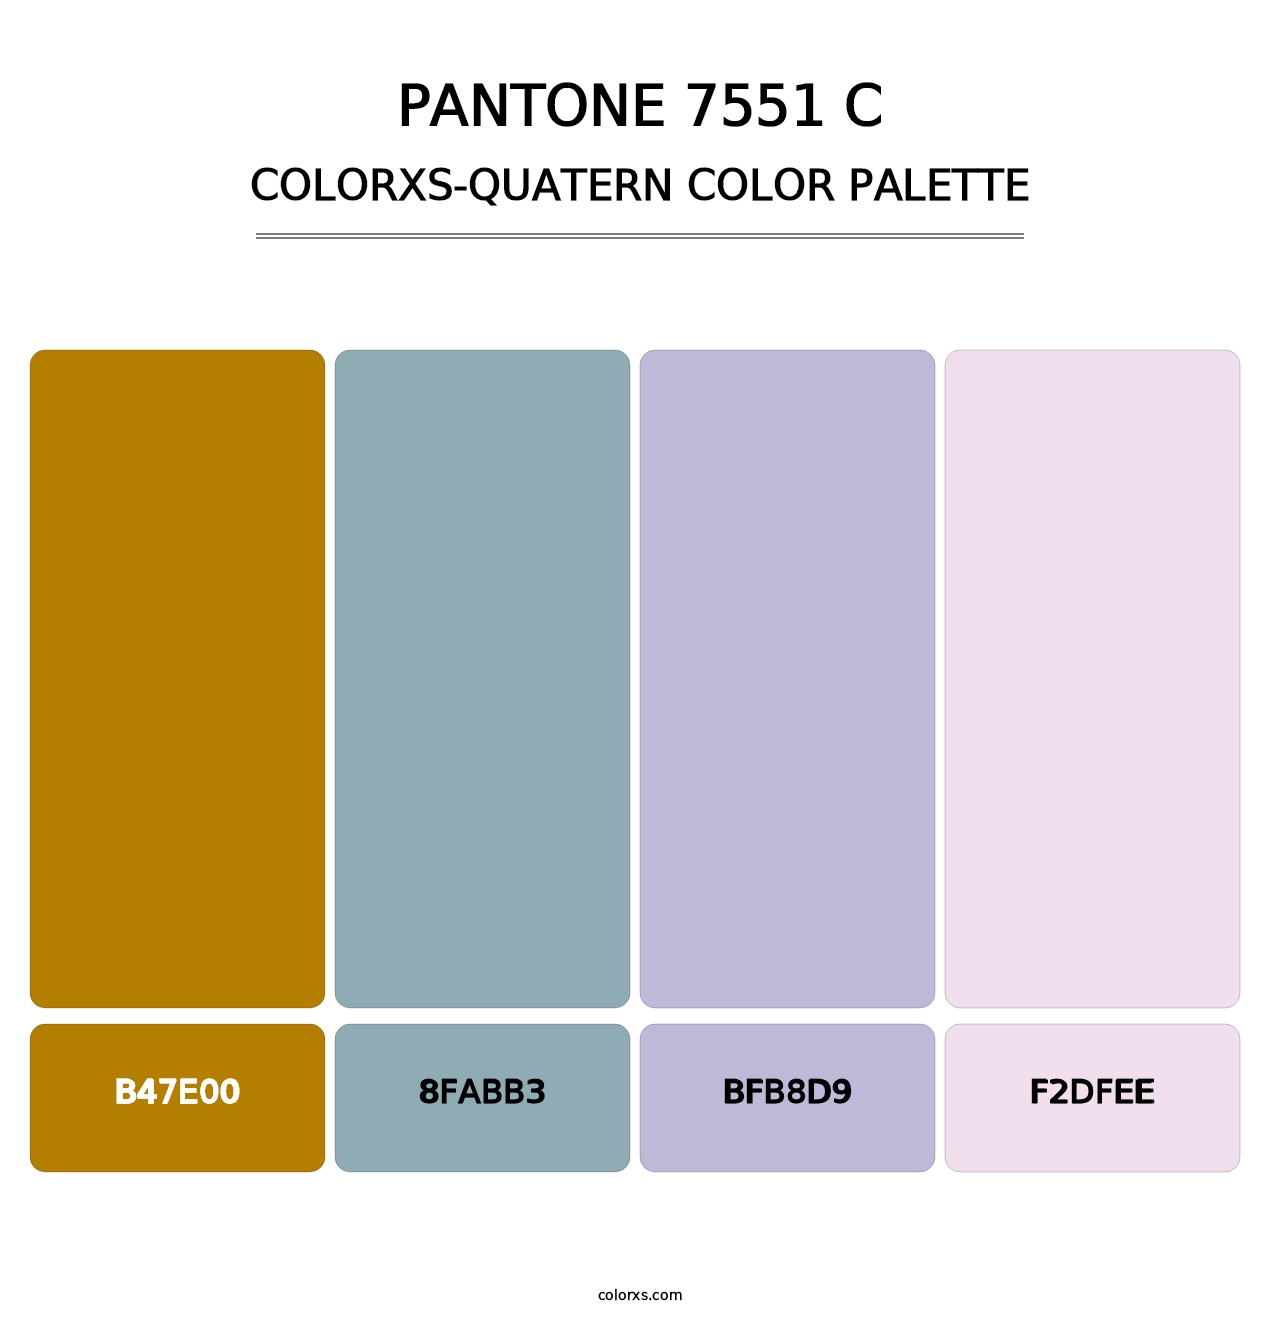 PANTONE 7551 C - Colorxs Quatern Palette